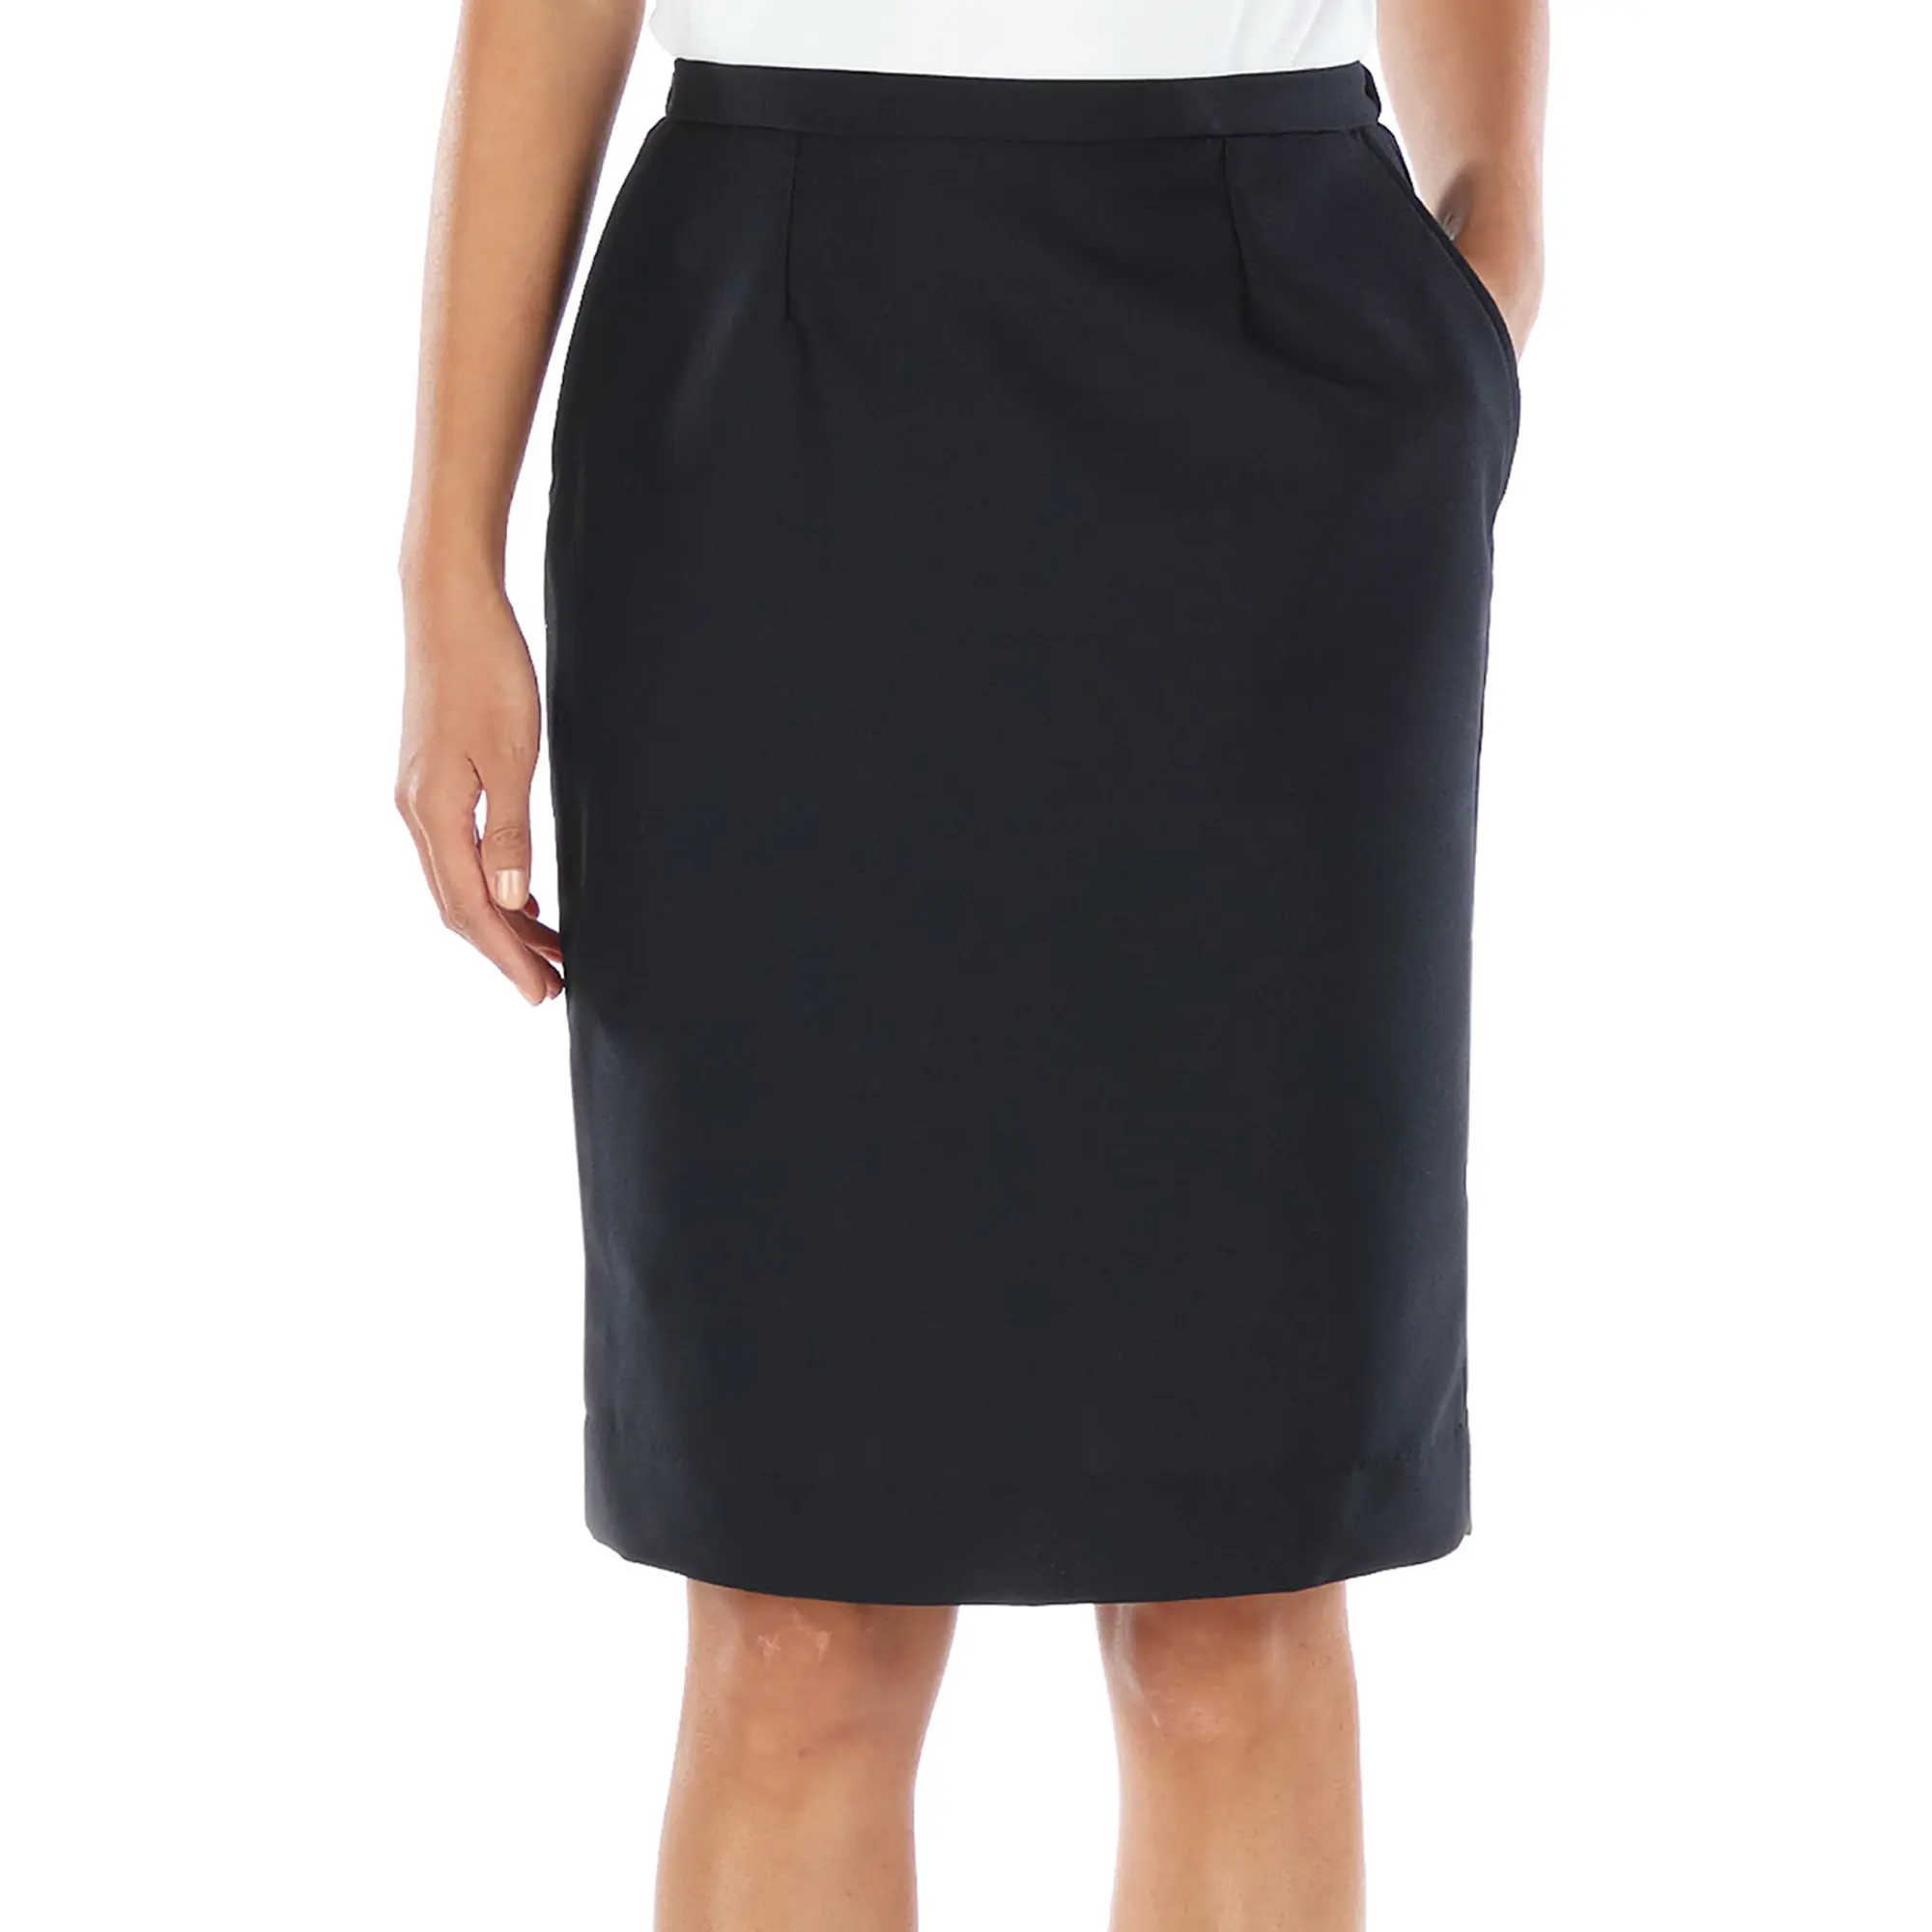 Women's polyester straight skirt